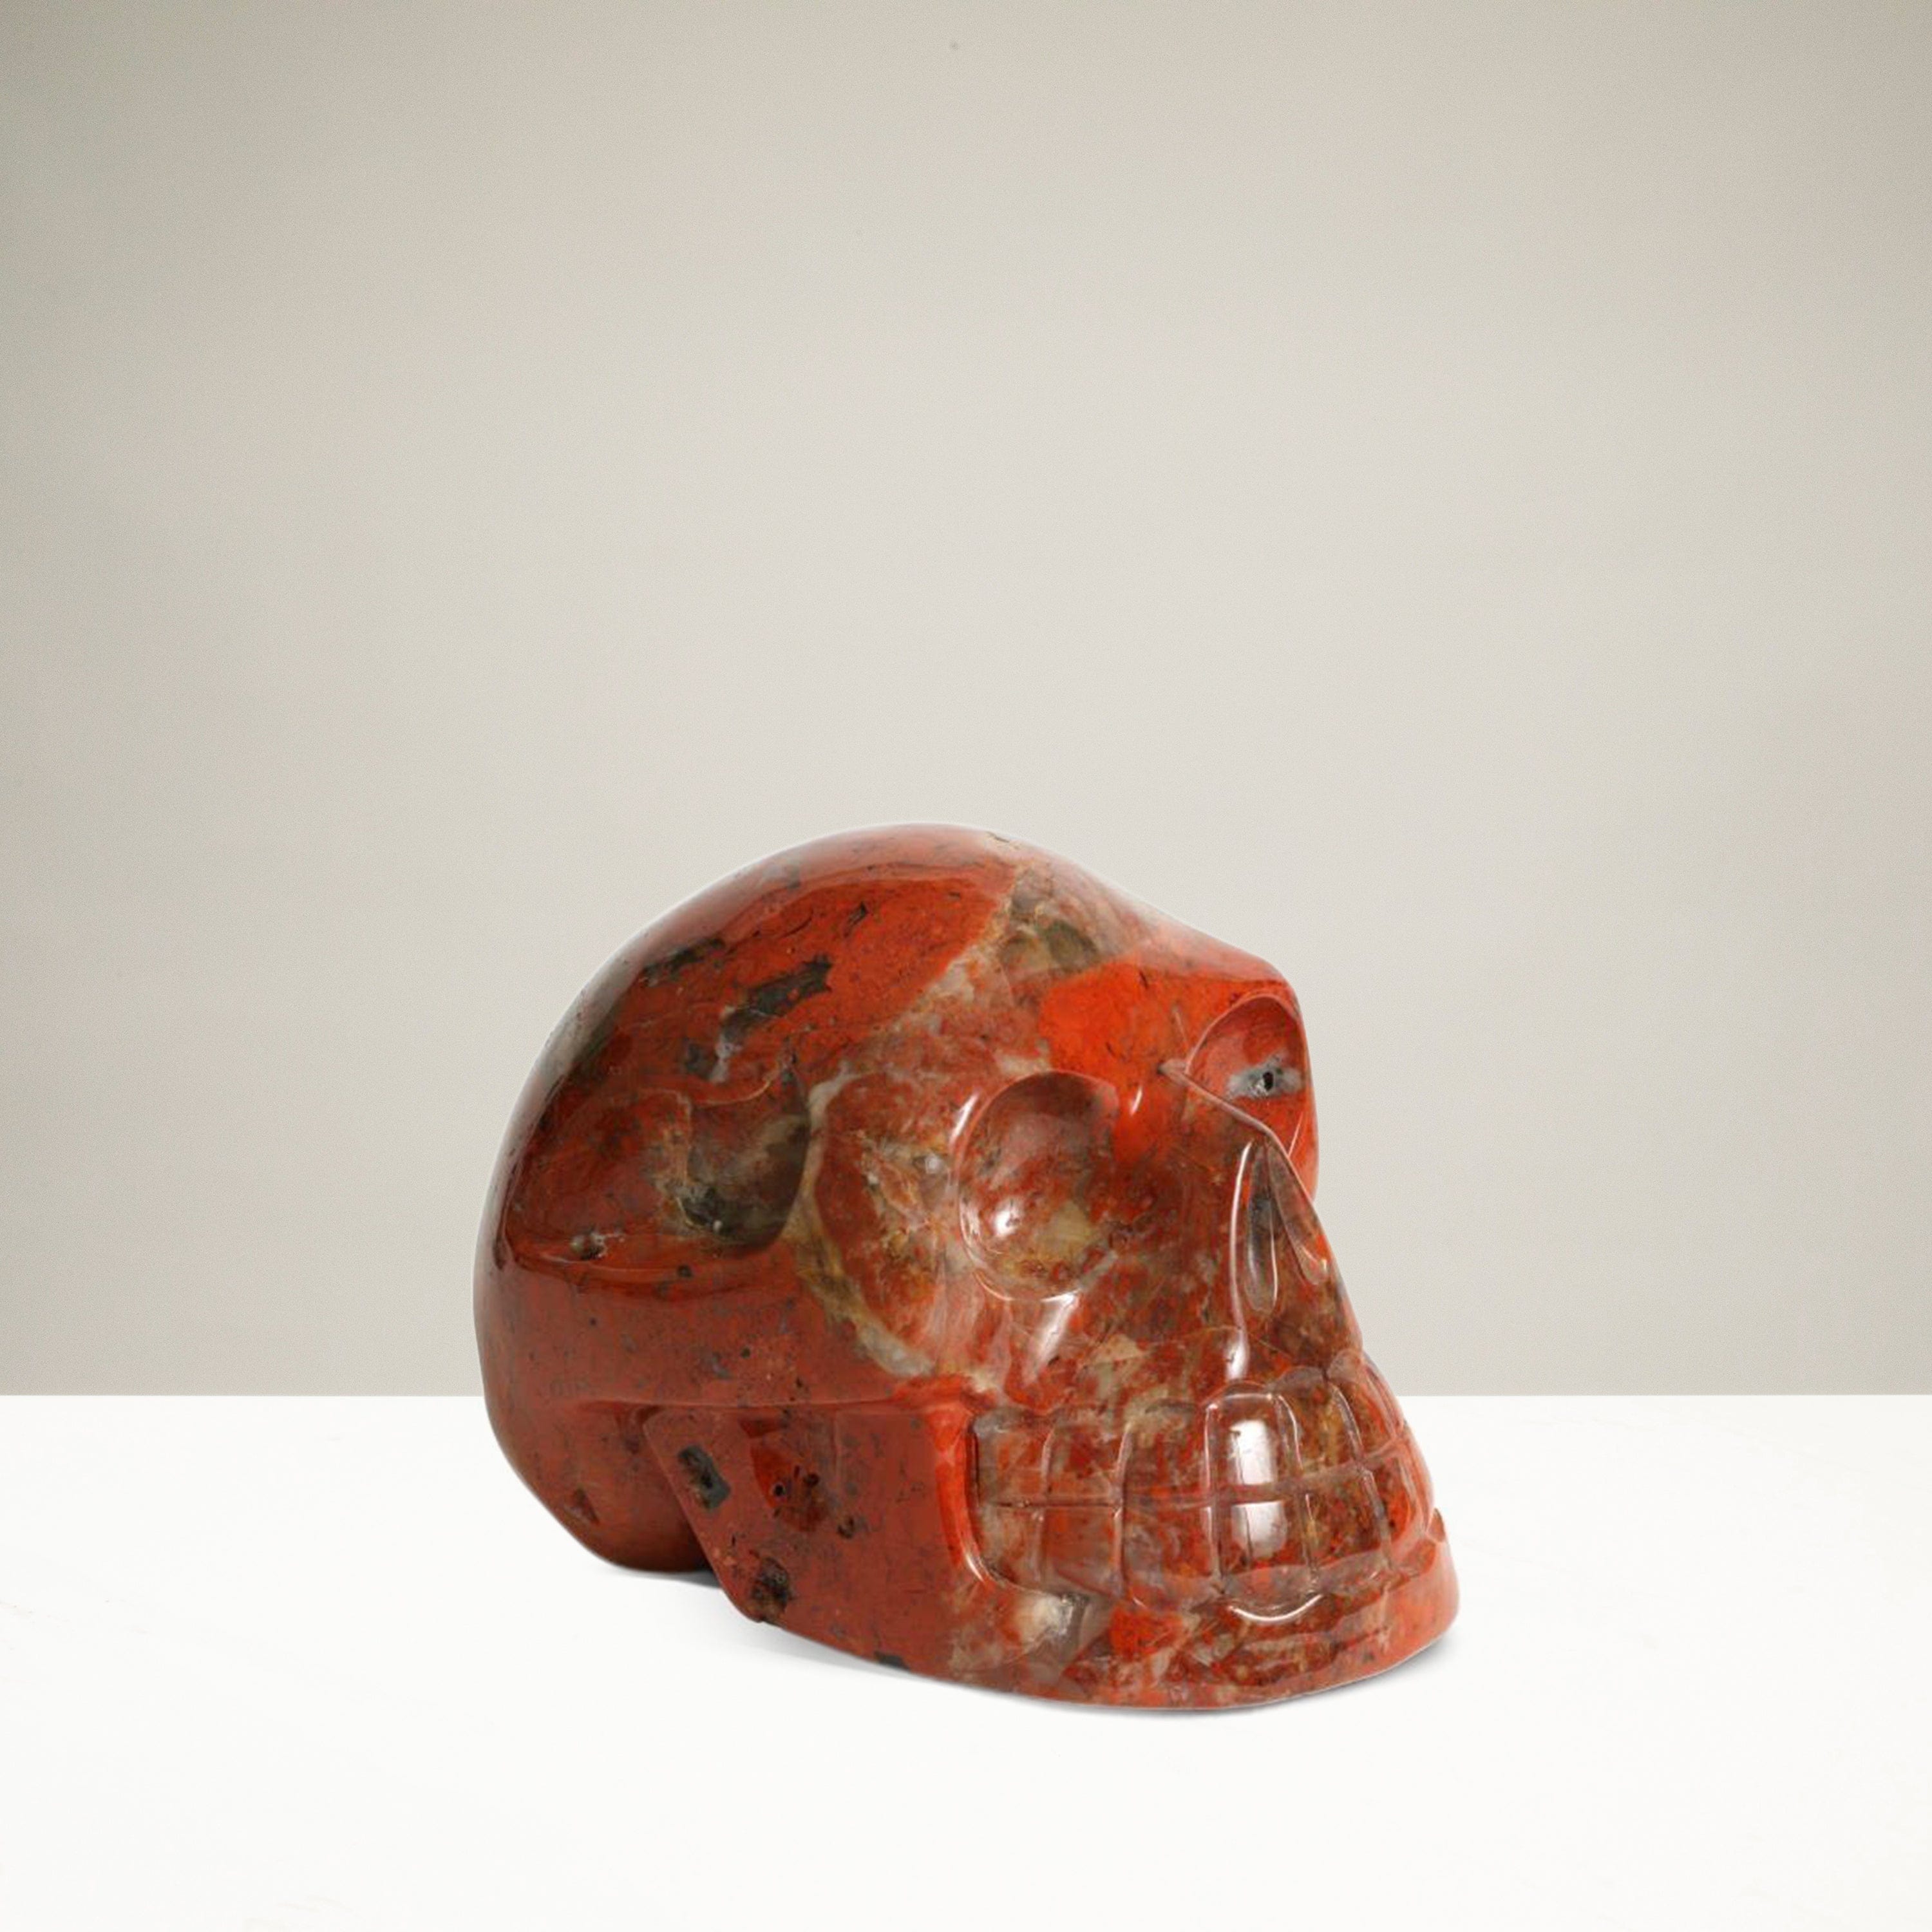 Kalifano Gemstone Carvings SKULL2400.011 - Hand Carved Brecciated Jasper Skull-Brazil- 4,360 Grams 7.5" x 5" x 5.5" SKULL2400.011